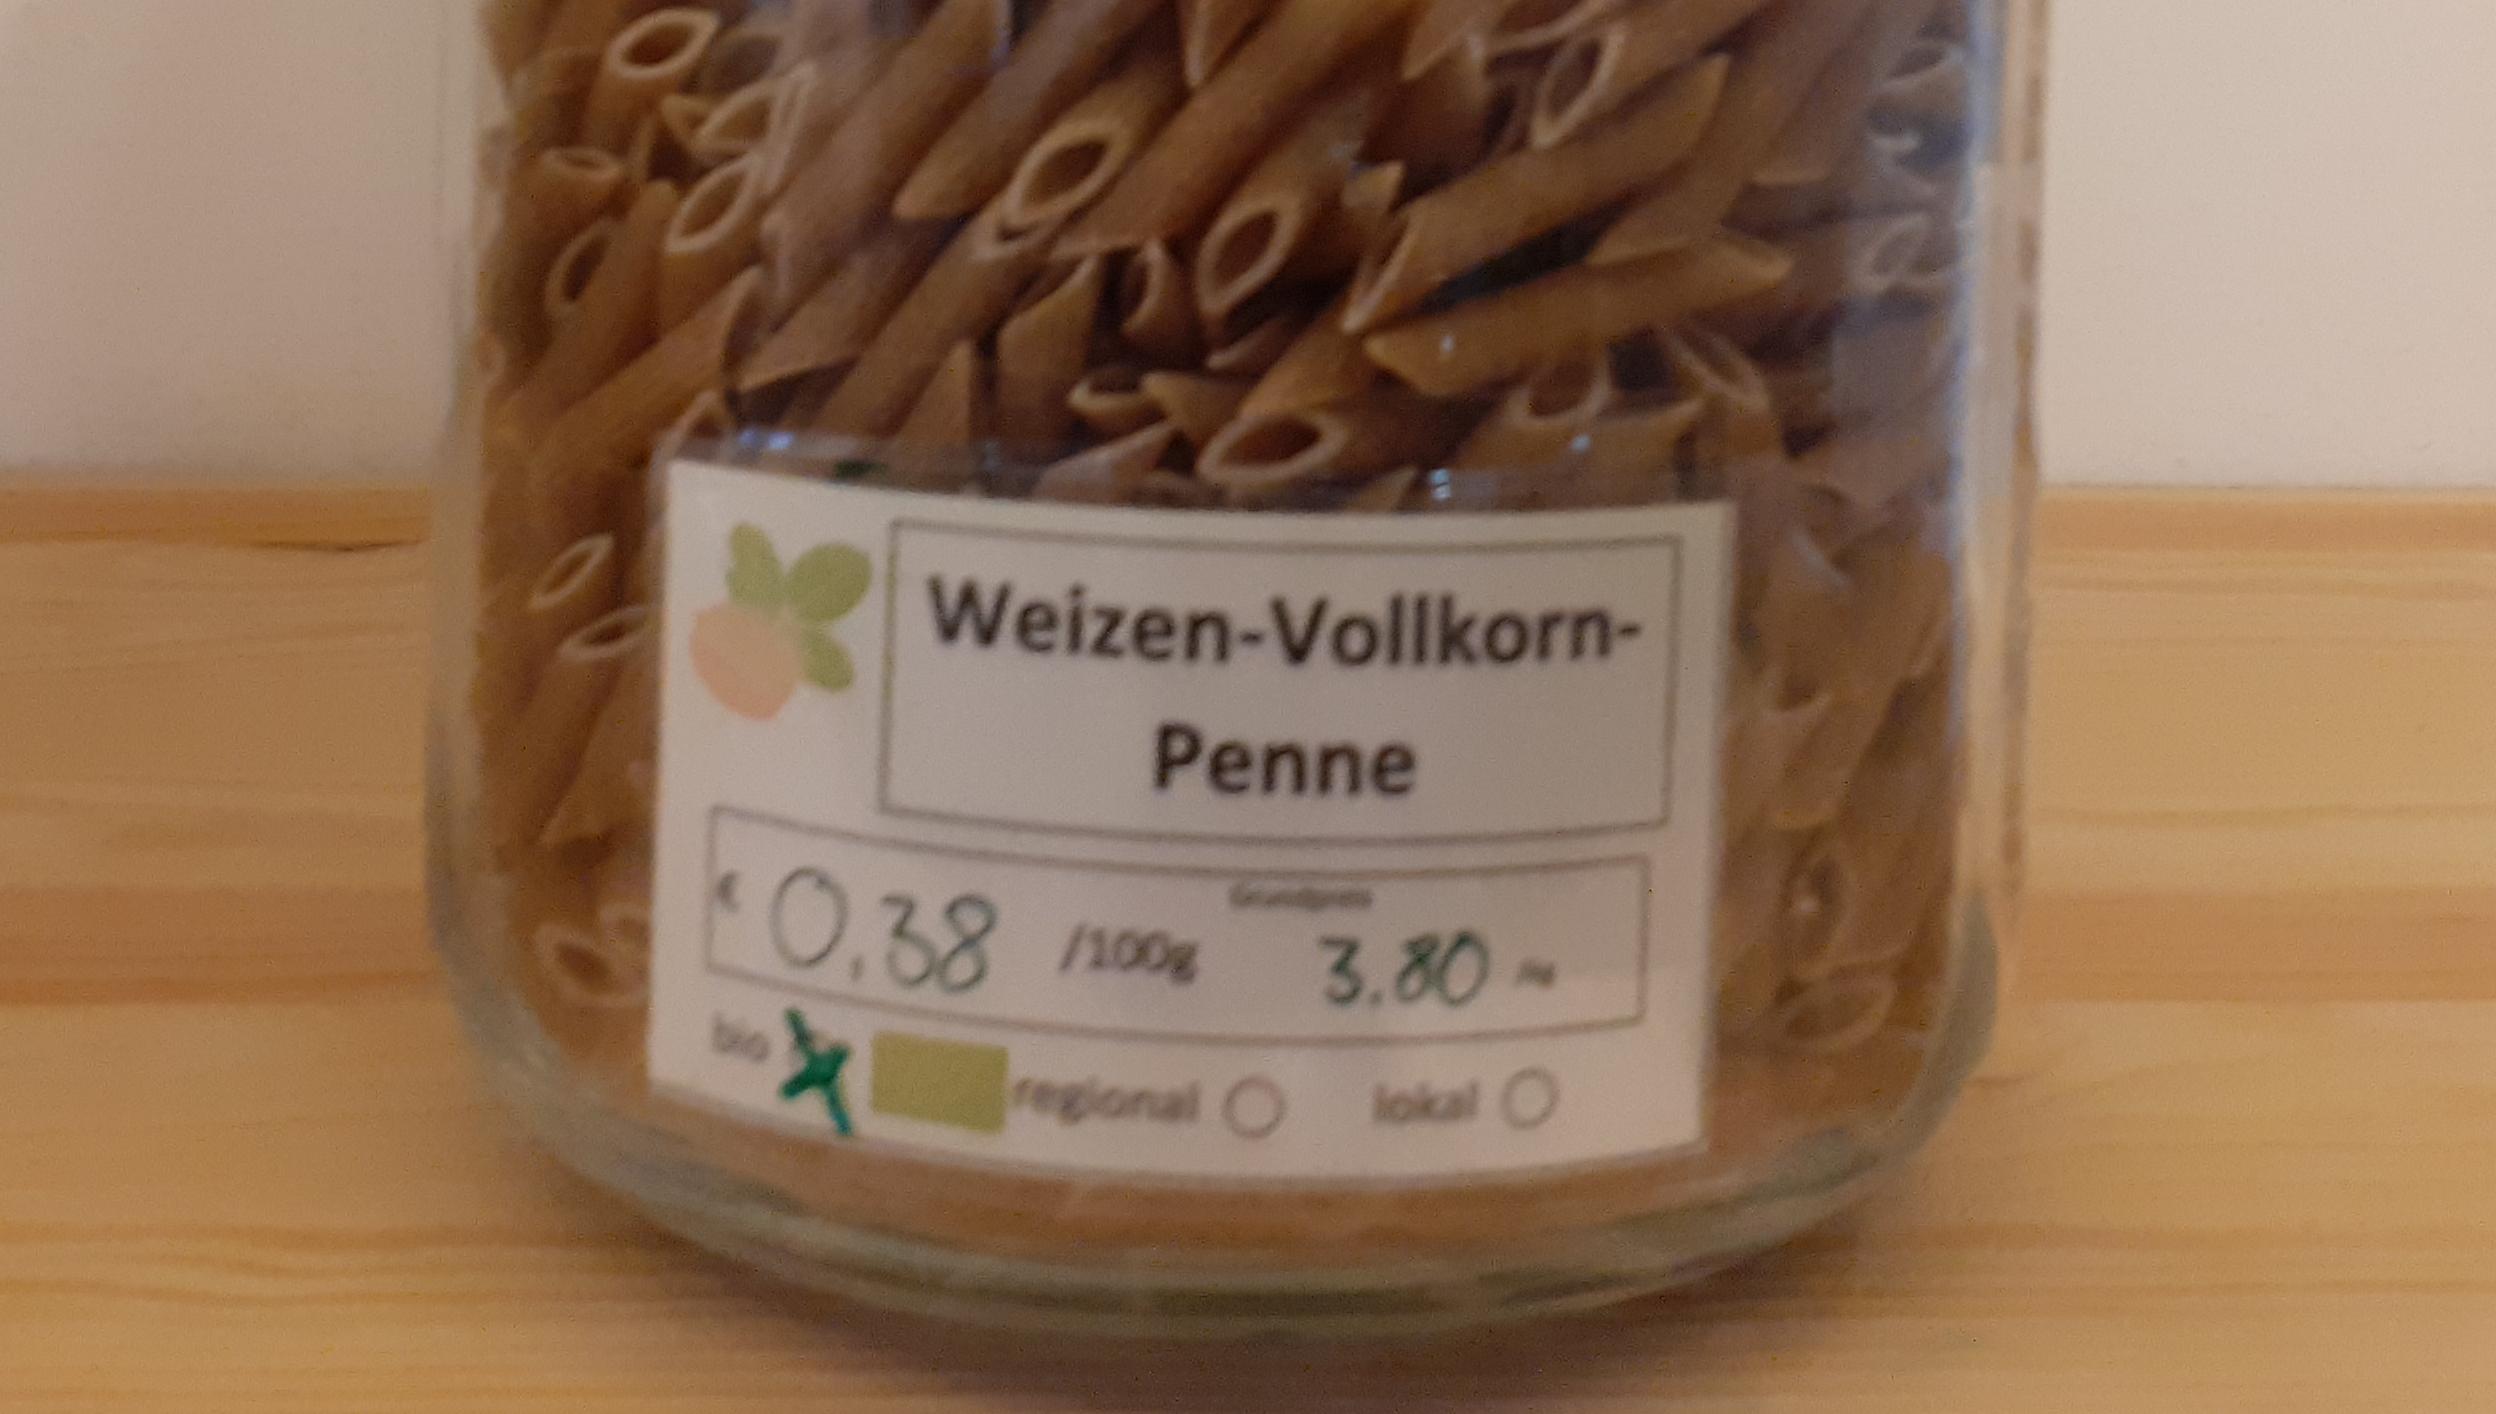 Weizen-Vollkorn-Penne